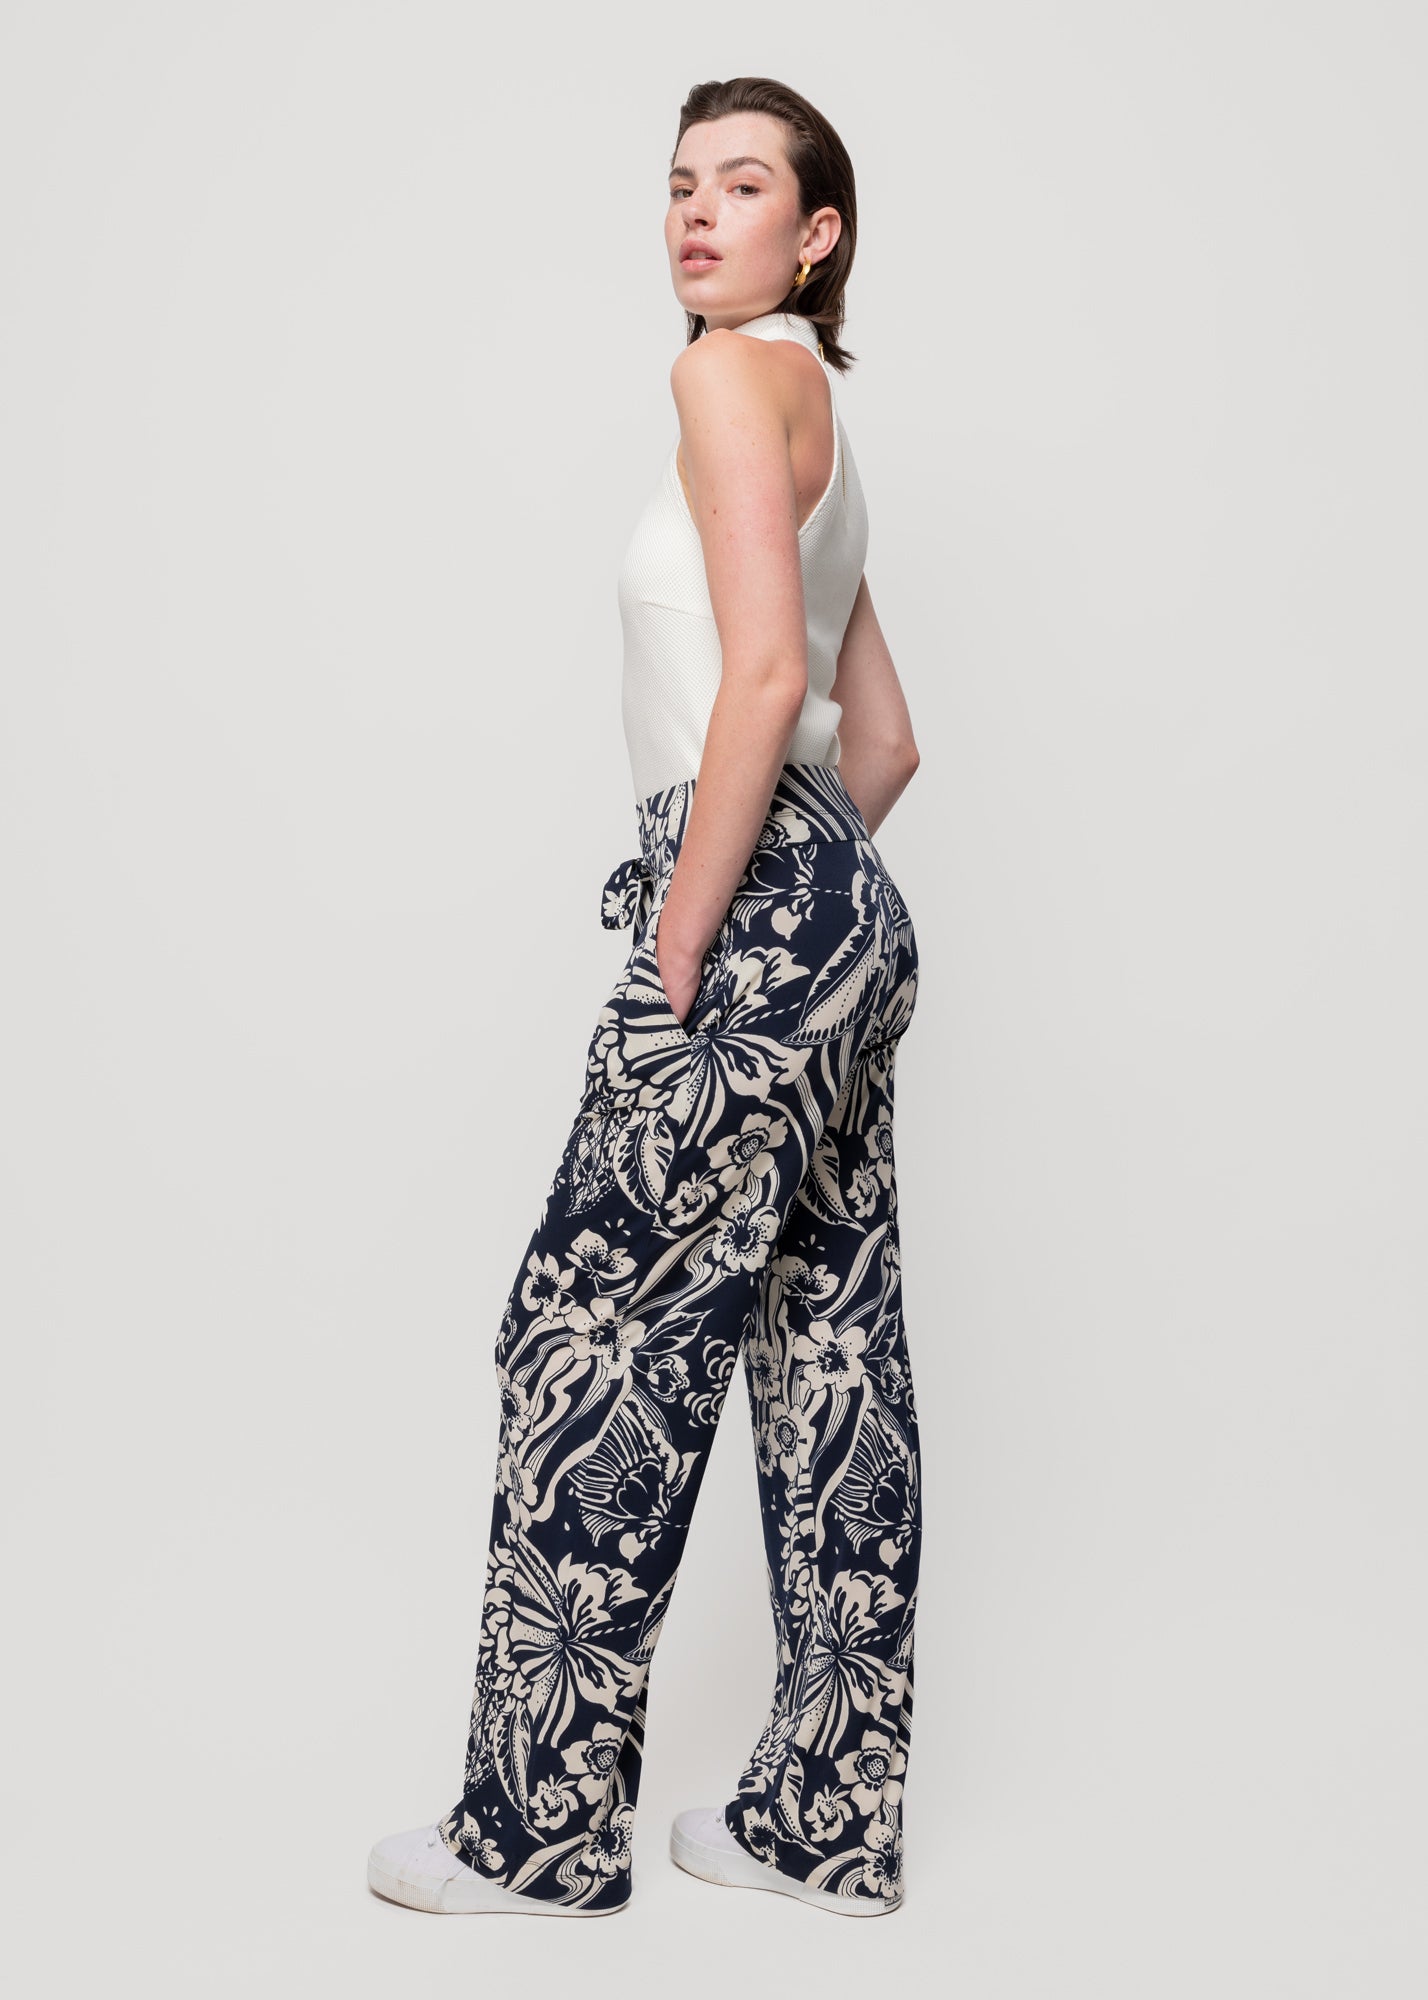 Klas Guggenheim Museum Handvest Tricot broek met wijde pijp | De officiële Vanilia webshop